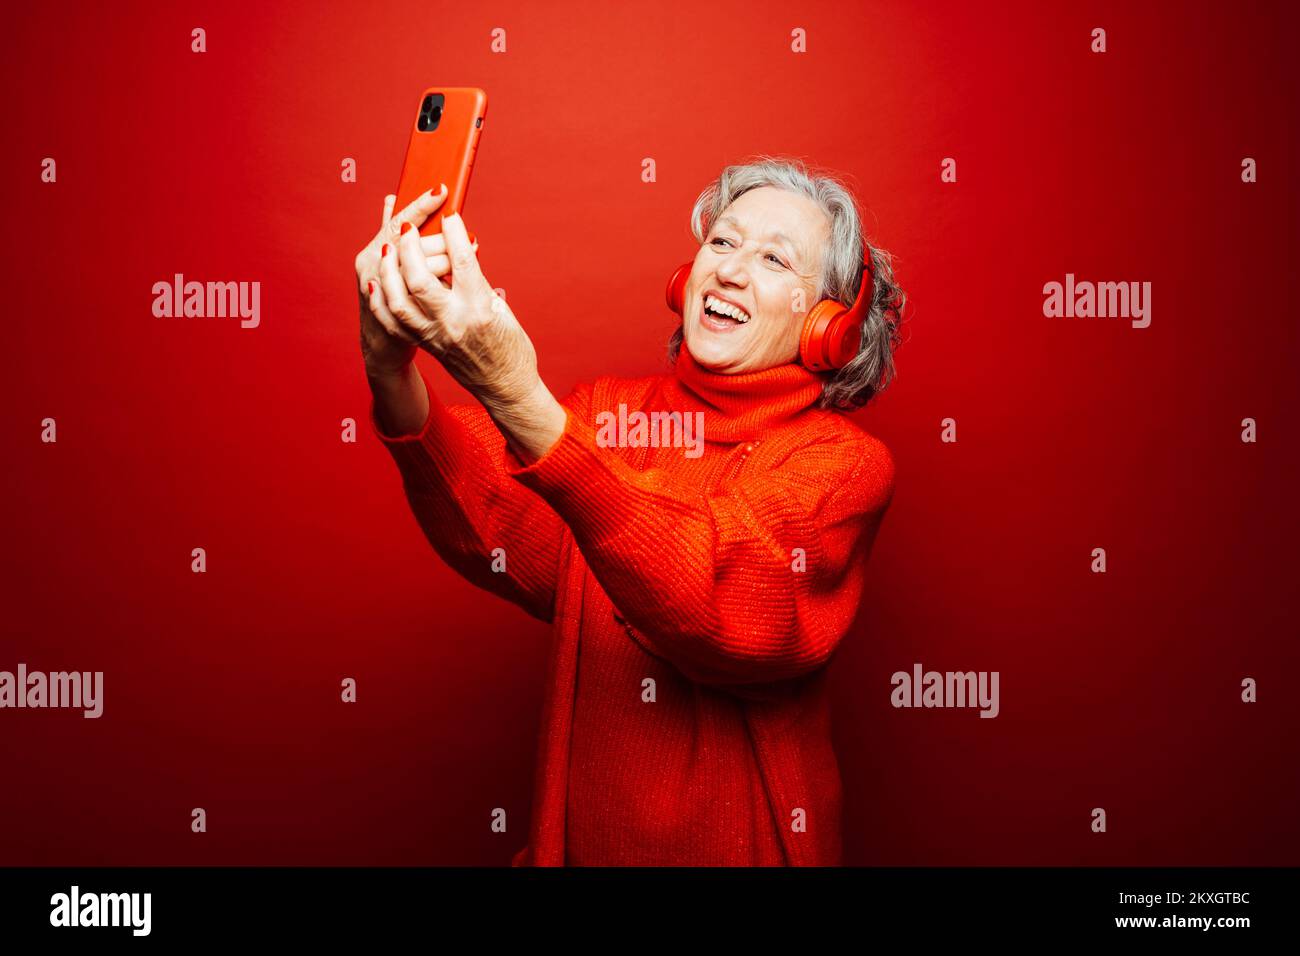 Femme âgée vêtue de vêtements rouges, emportant un selfie avec un casque rouge et un smartphone rouge, sur un fond rouge Banque D'Images